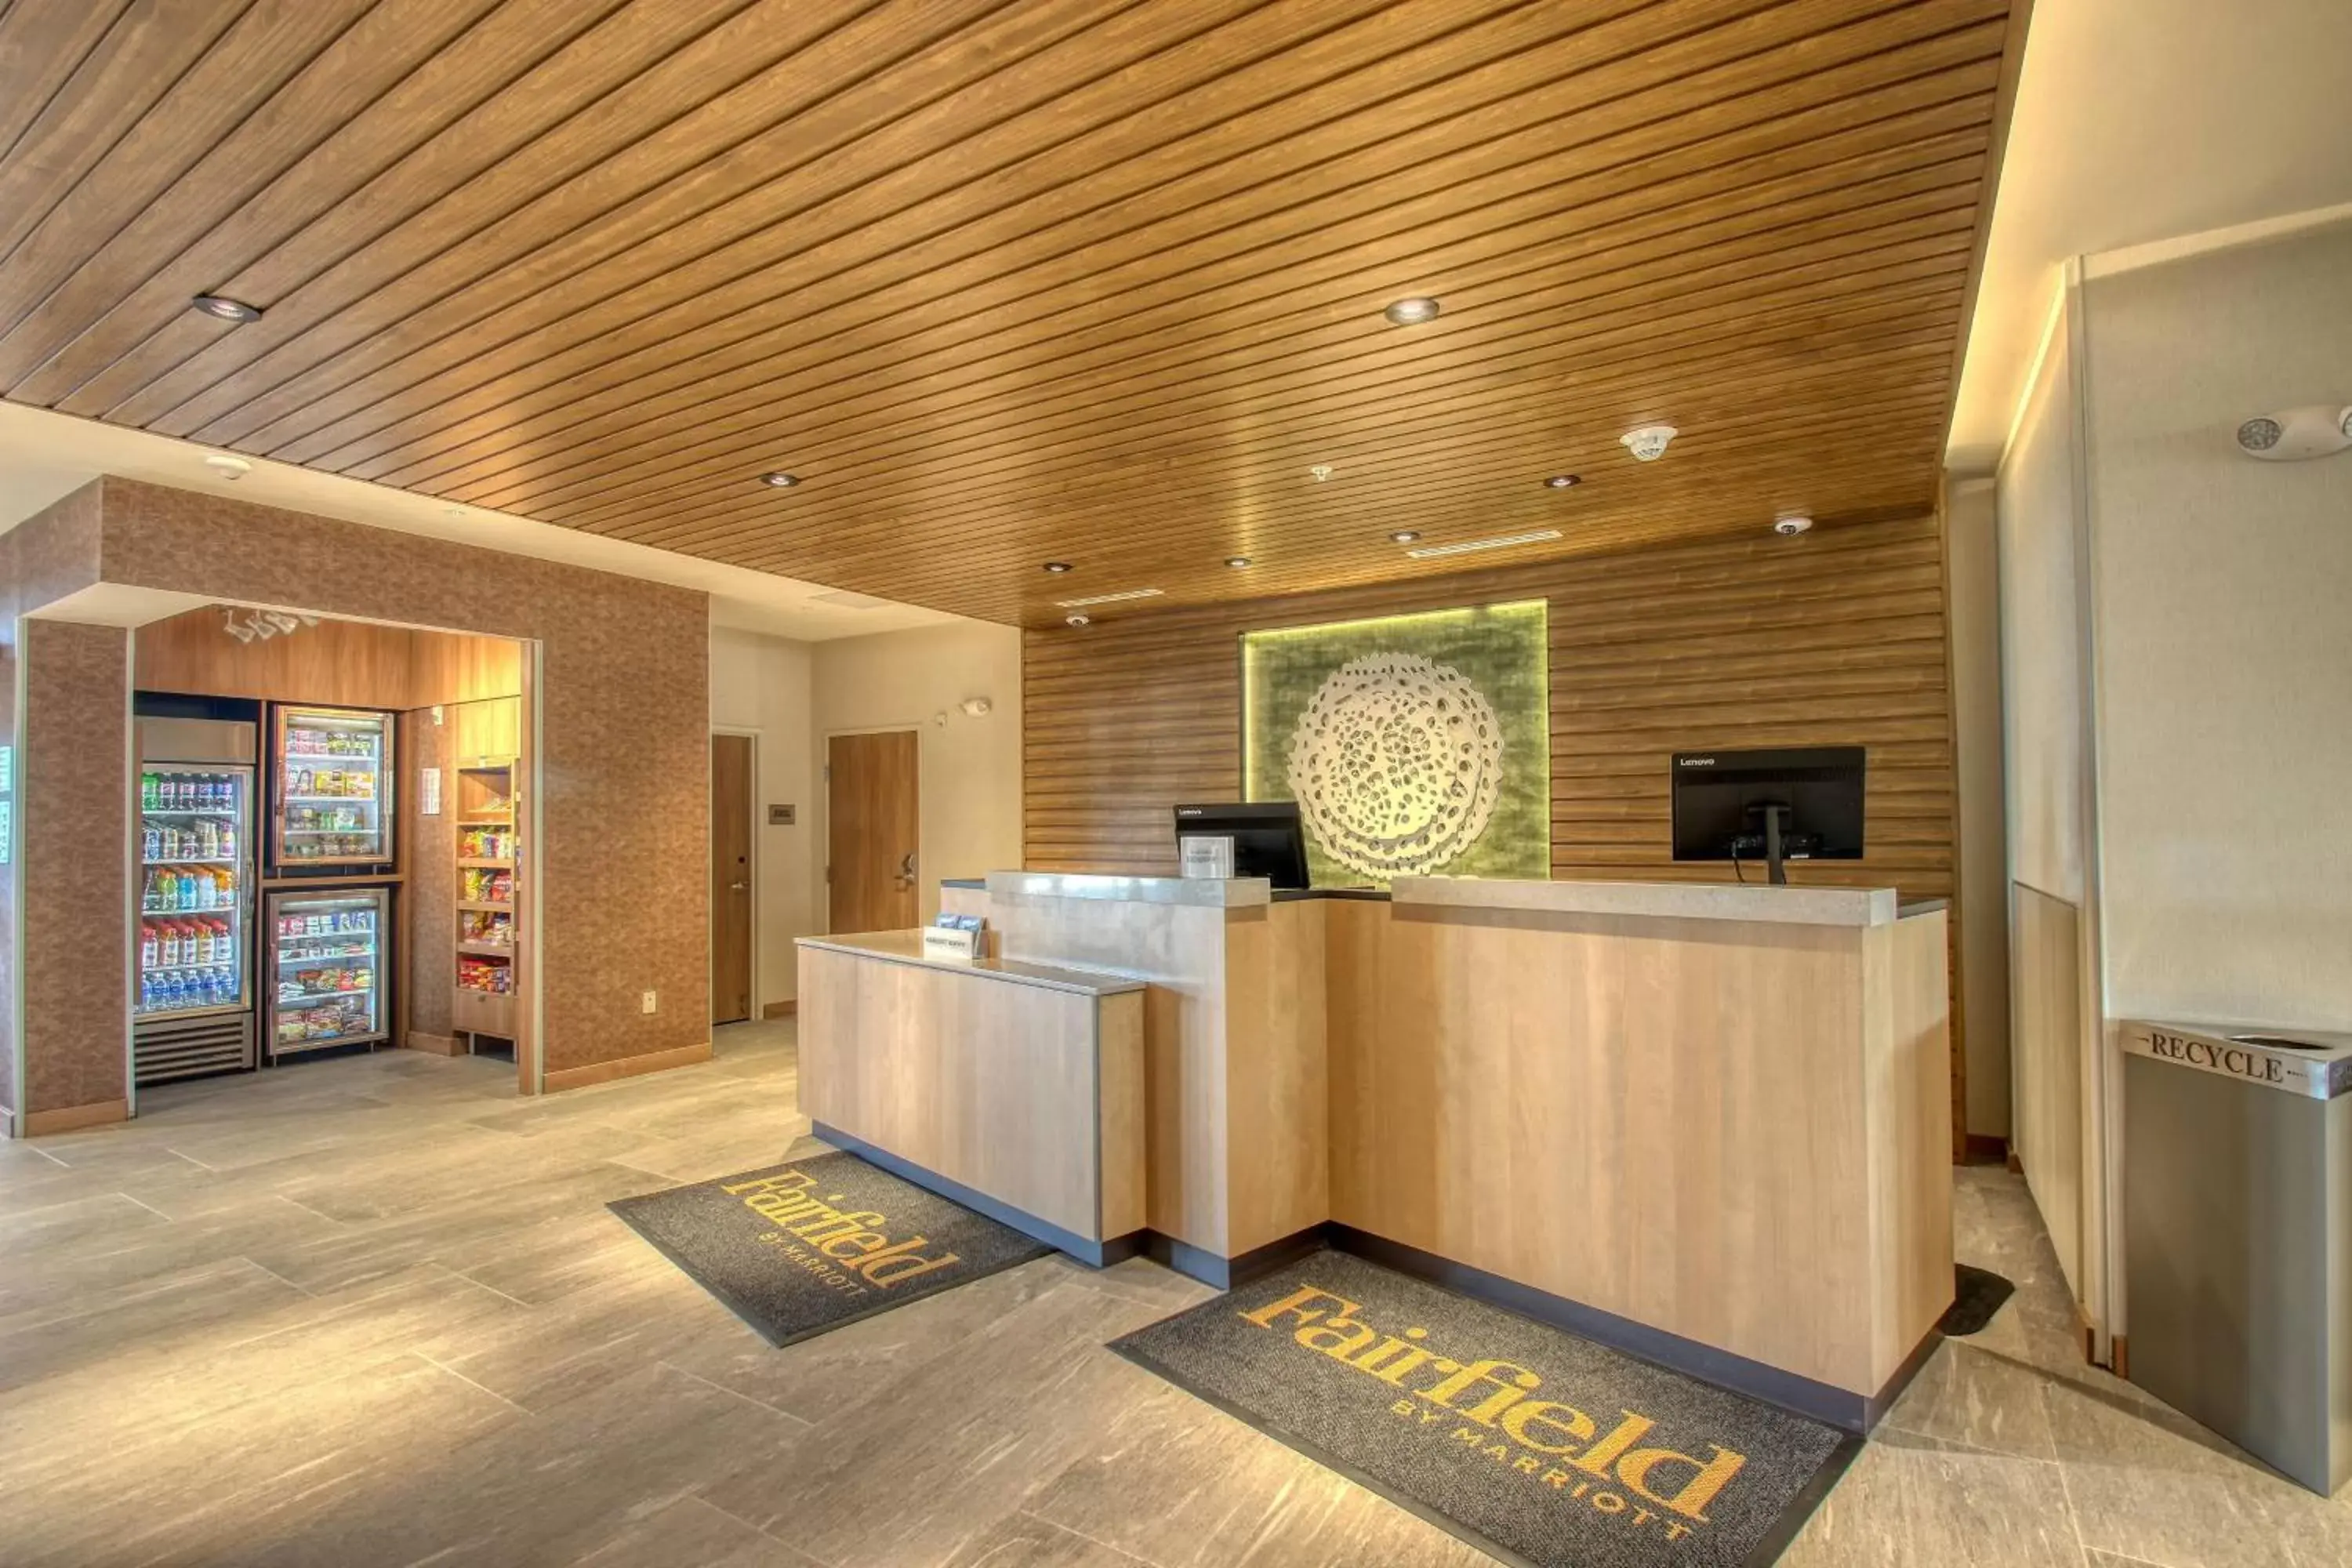 Lobby or reception, Lobby/Reception in Fairfield Inn & Suites by Marriott Appleton